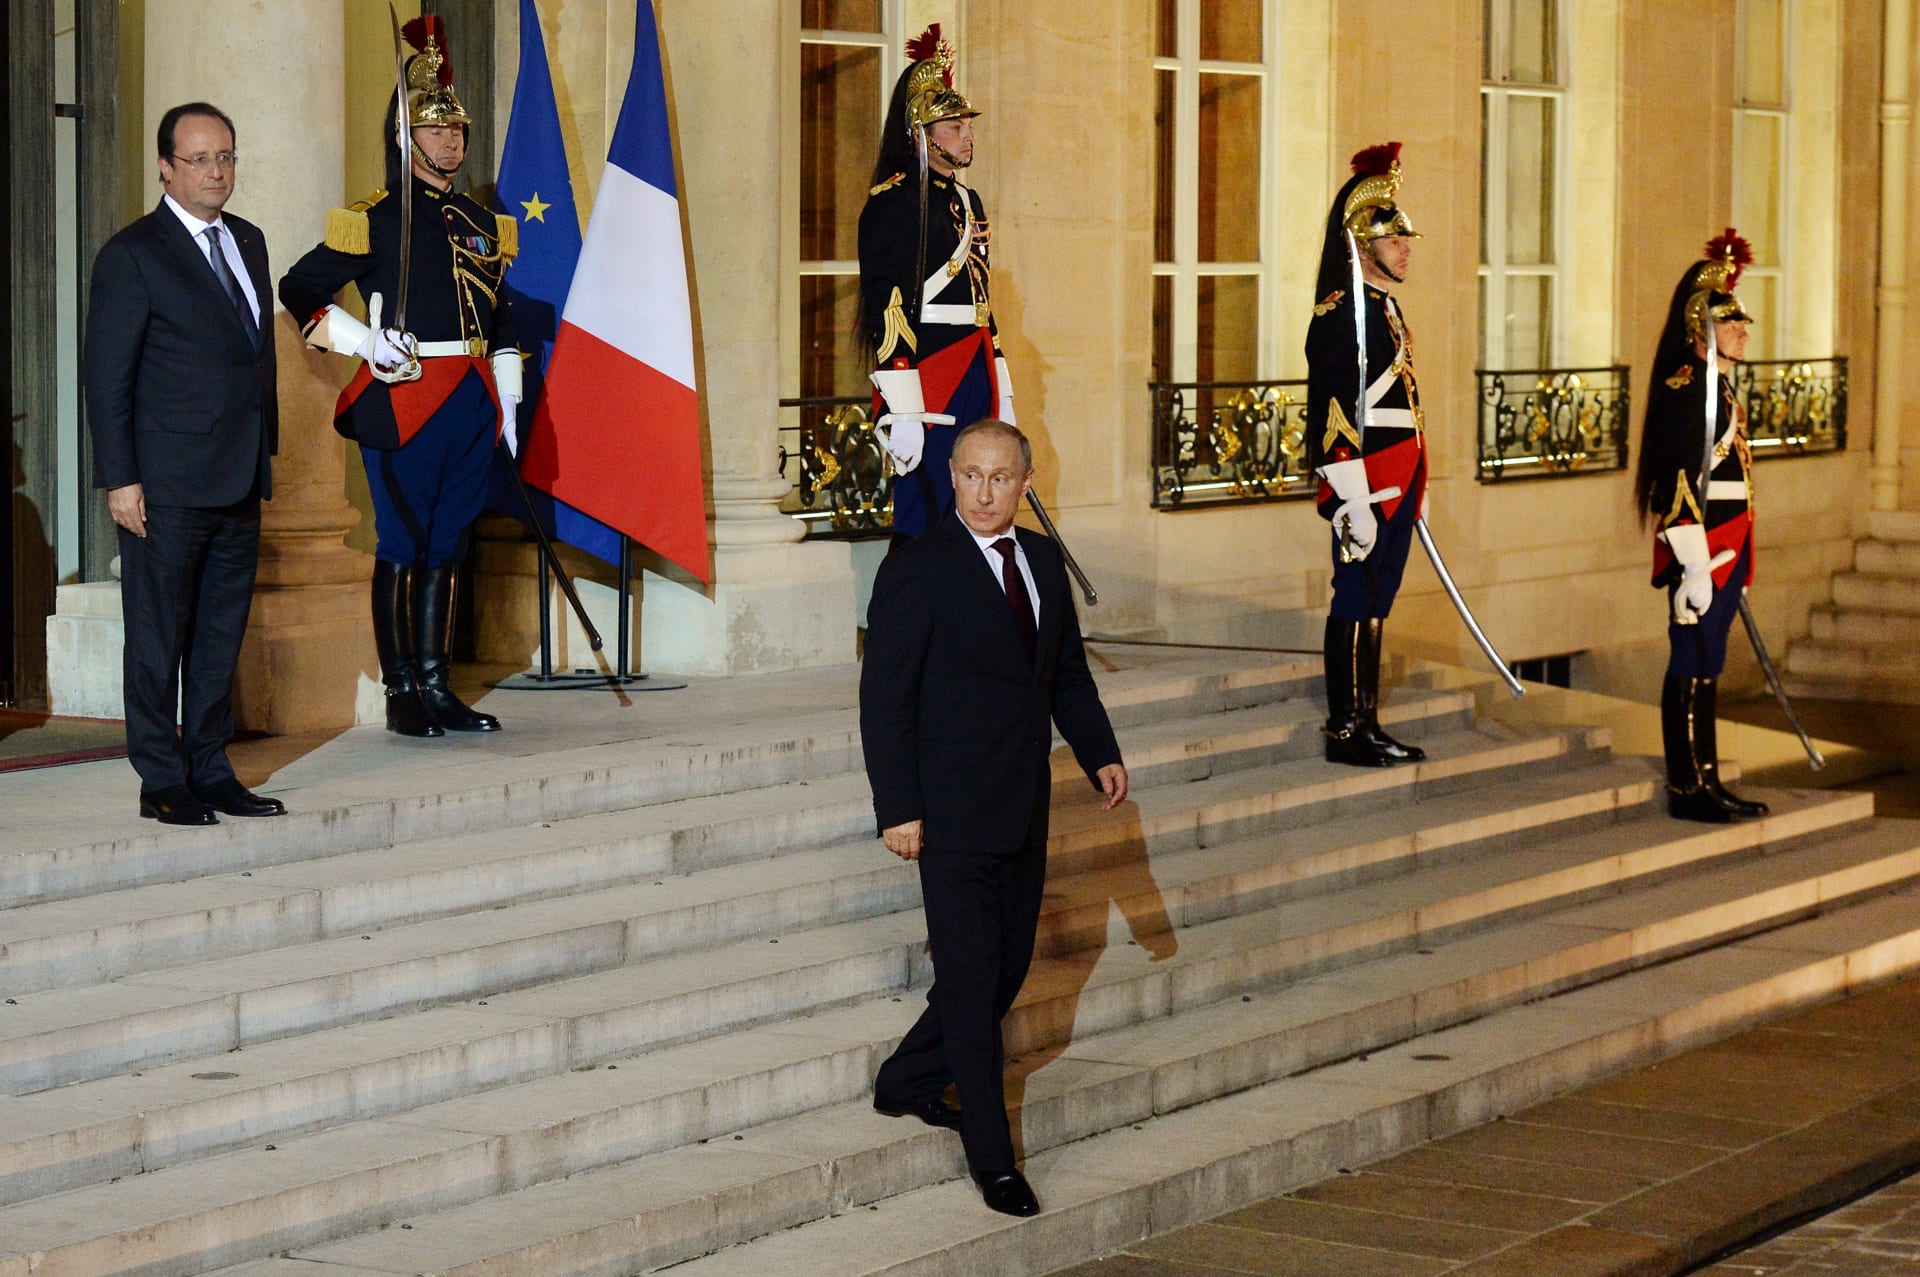 فرنسا تدعو روسيا وليس بوتين للمشاركة باحتفالات ذكرى إنزال "النورماندي"